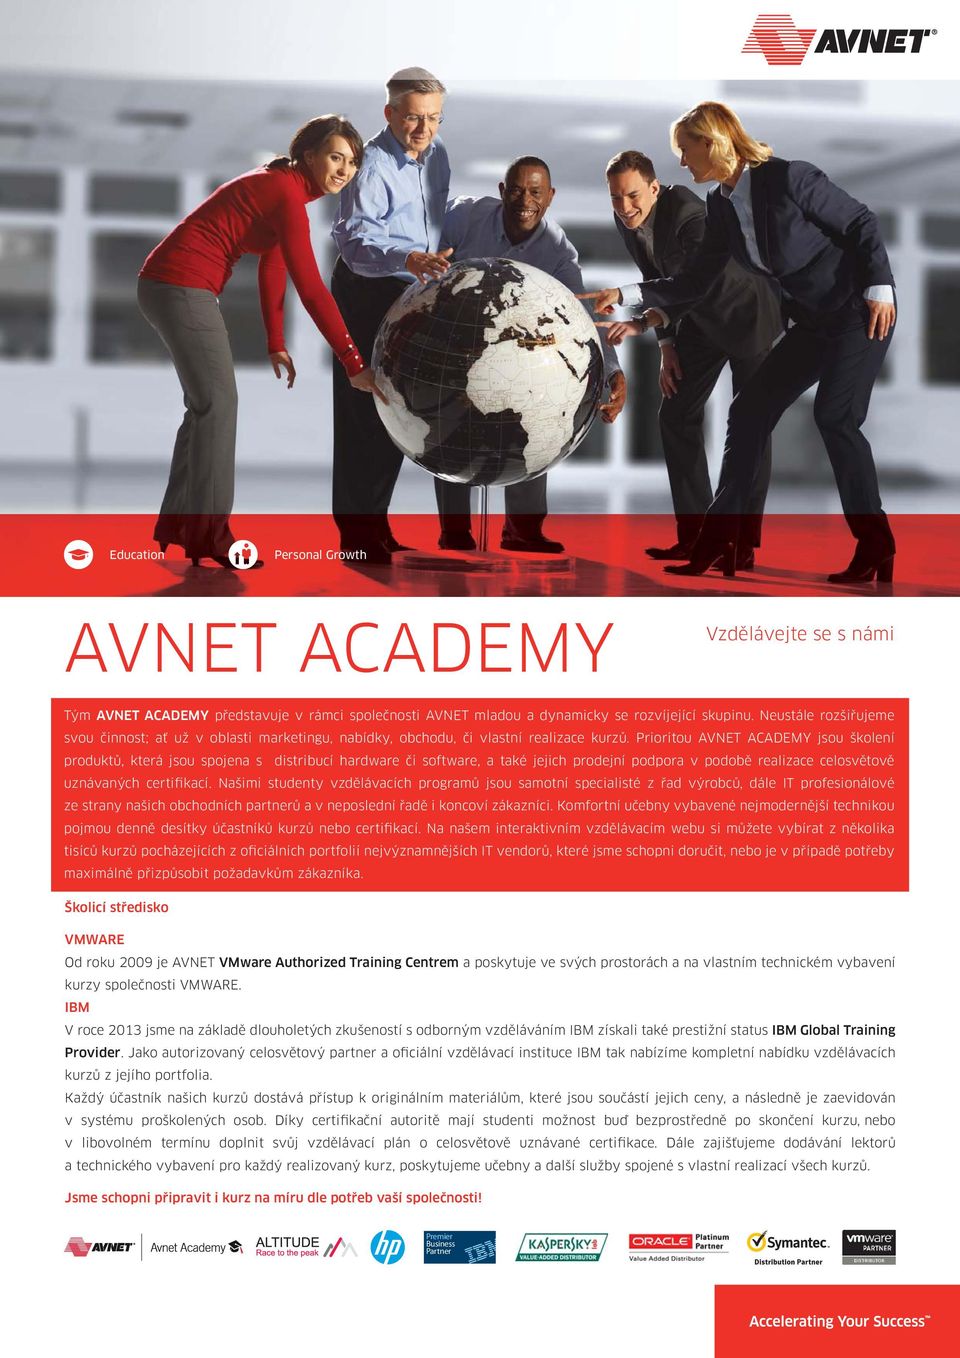 Prioritou AVNET ACADEMY jsou školení produktů, která jsou spojena s distribucí hardware či software, a také jejich prodejní podpora v podobě realizace celosvětově uznávaných certifikací.